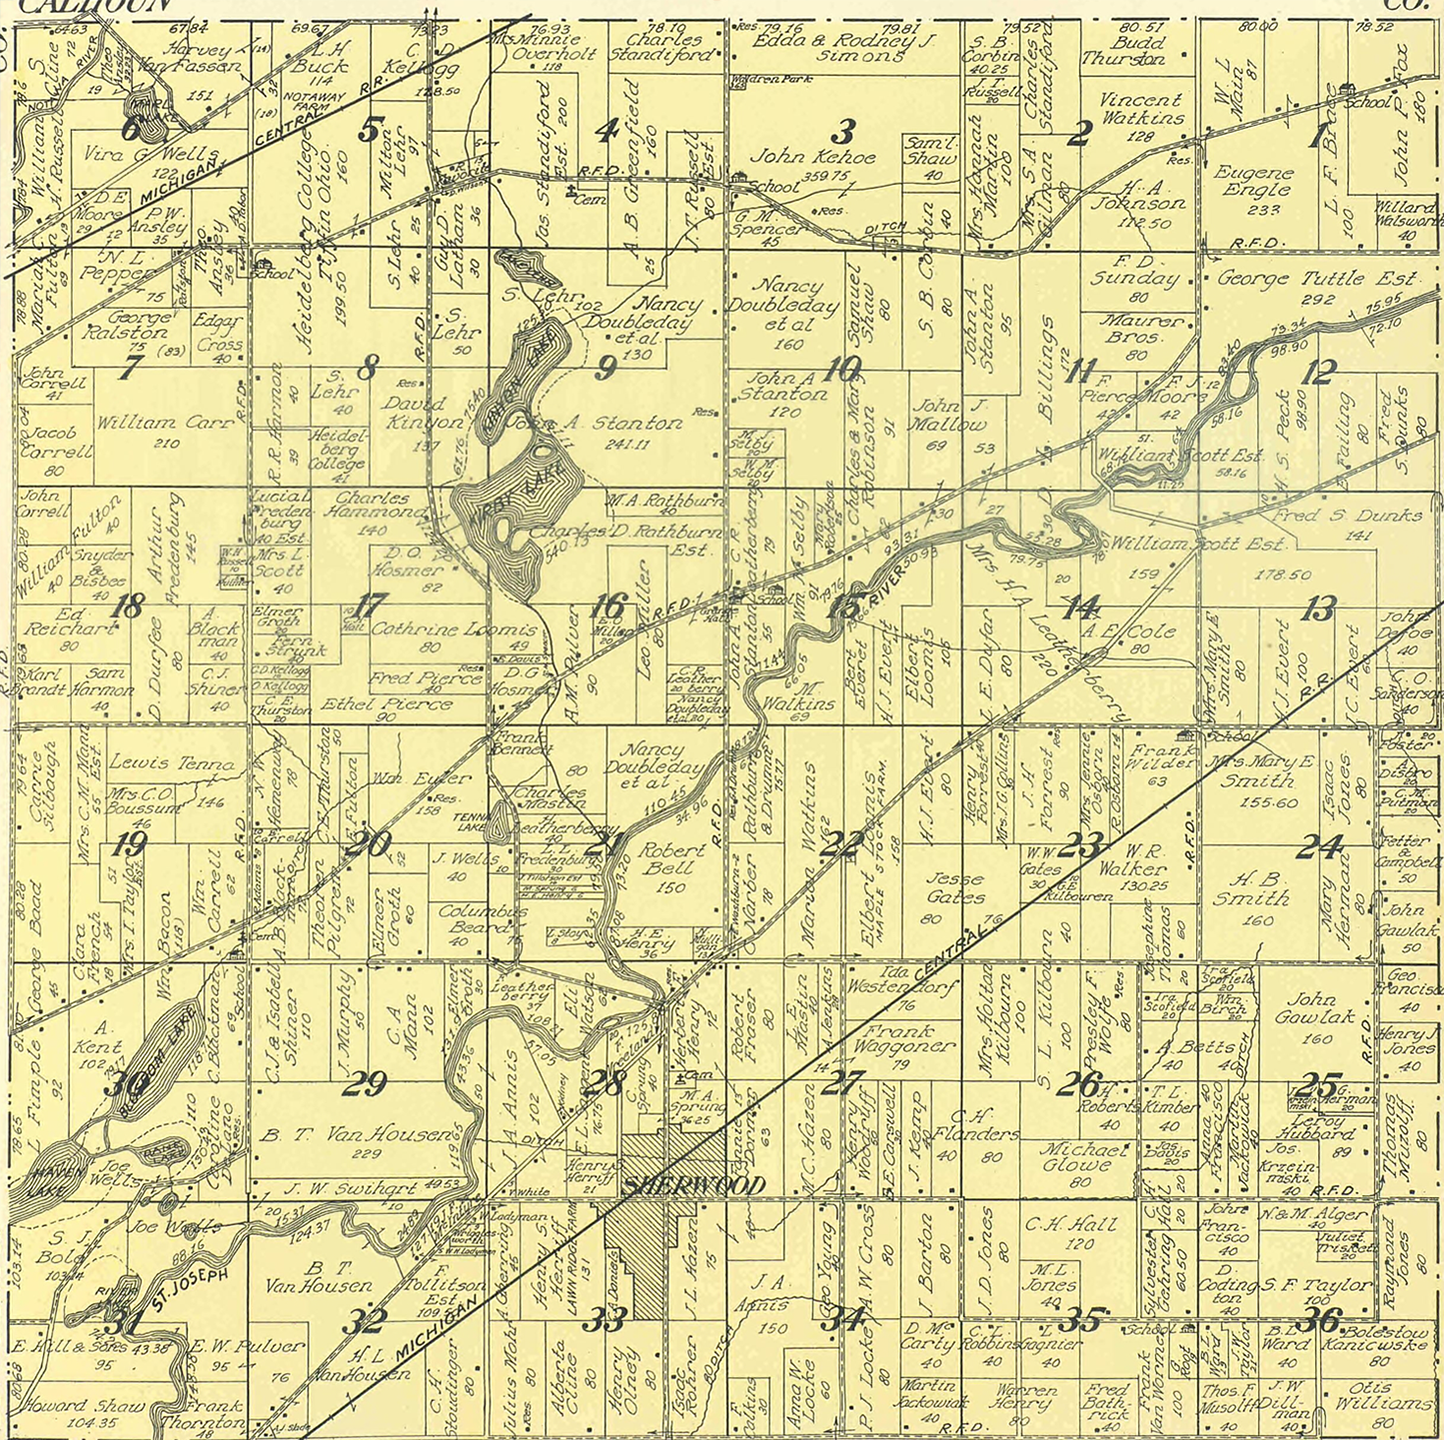 1915 Sherwood Township, Michigan landownership map